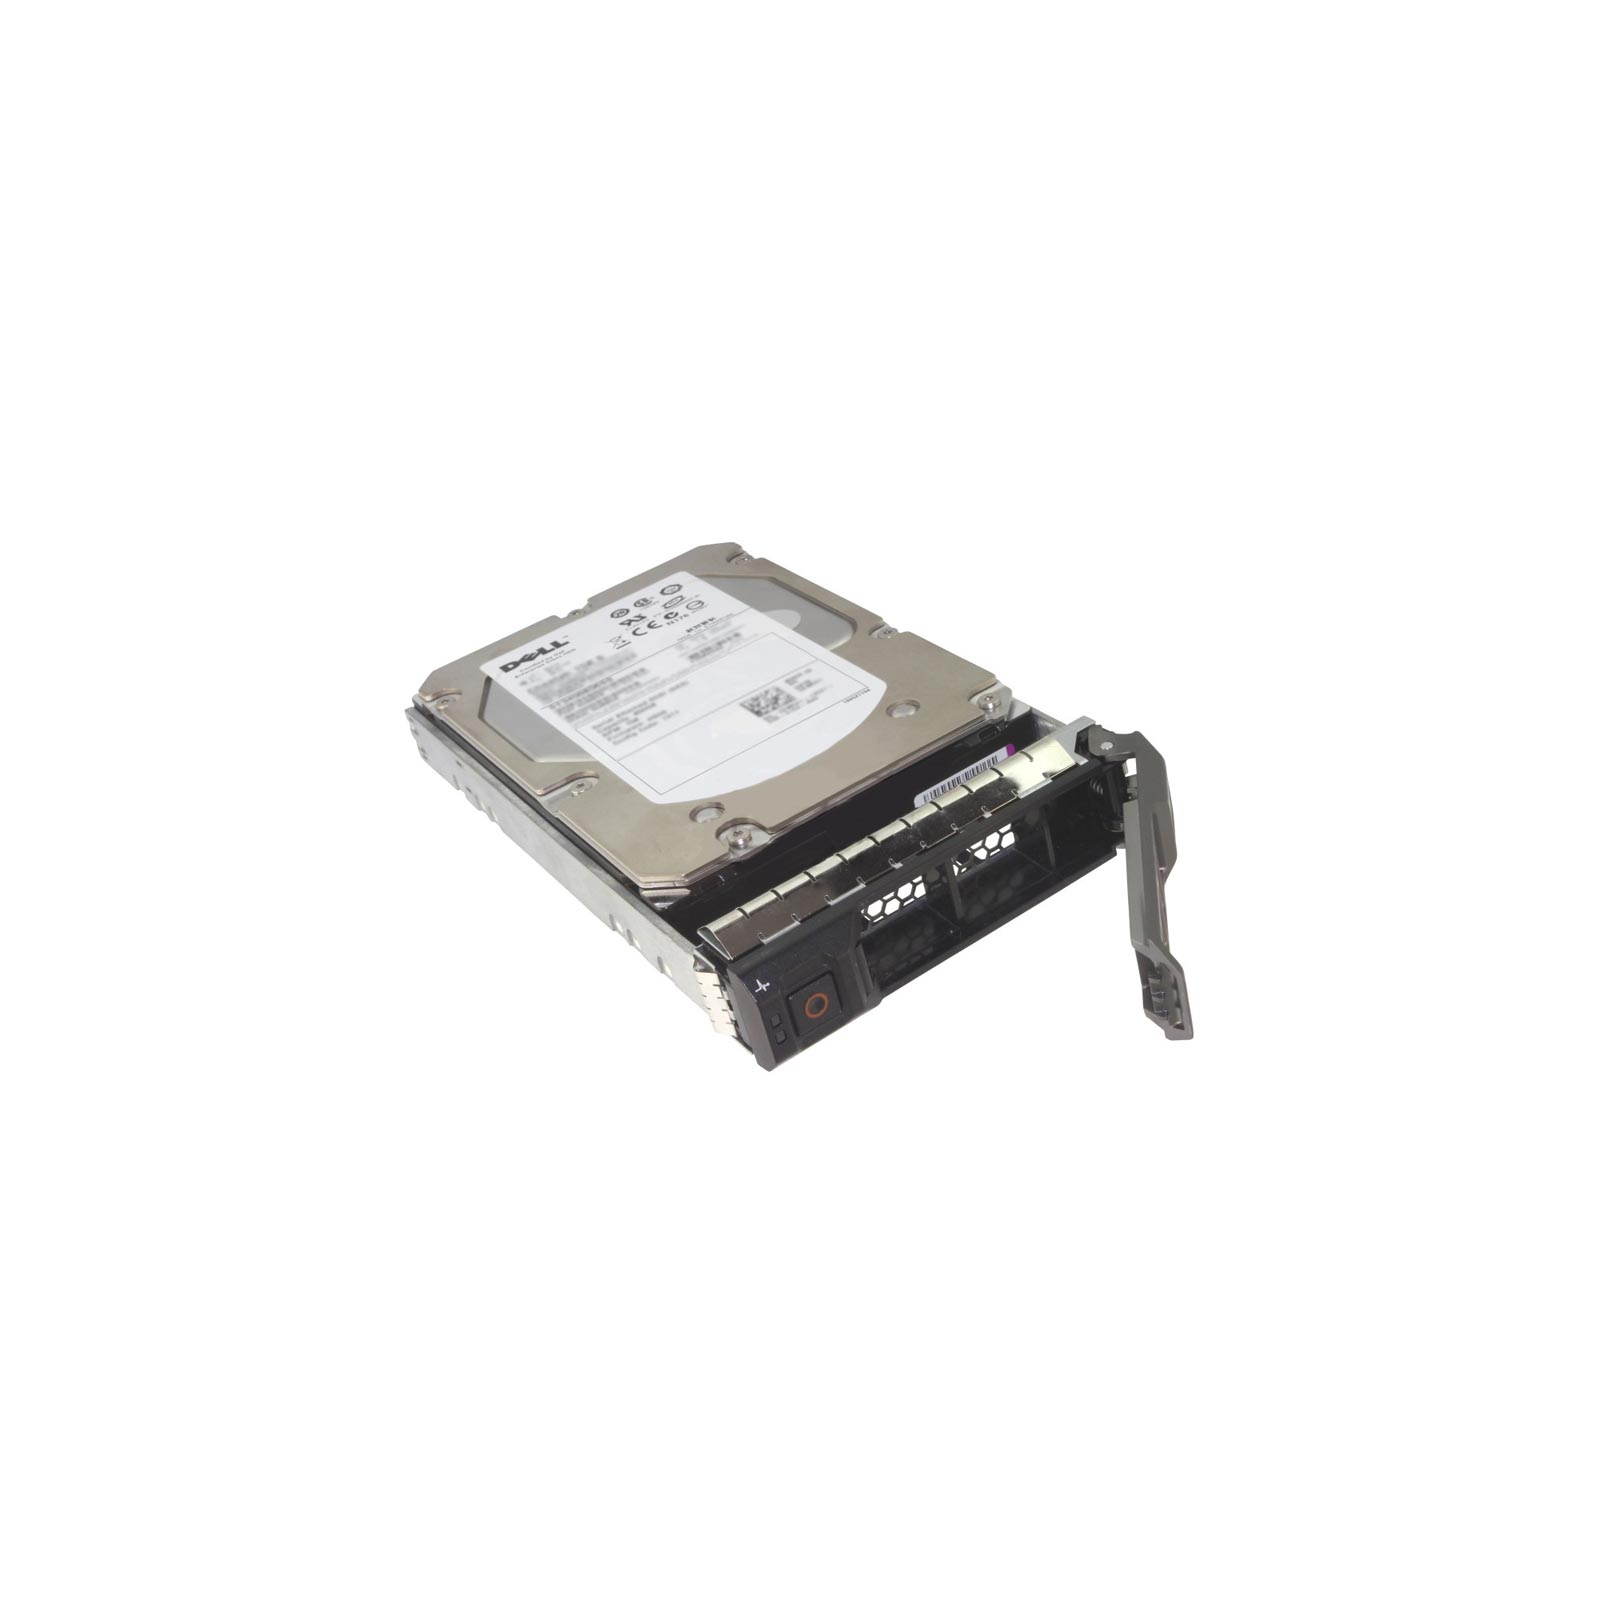 Жорсткий диск для сервера 12TB SATA 6G Midline 7.2K LFF (3.5in) LP 1yr W ty Helium 512 HP (881787-B21)